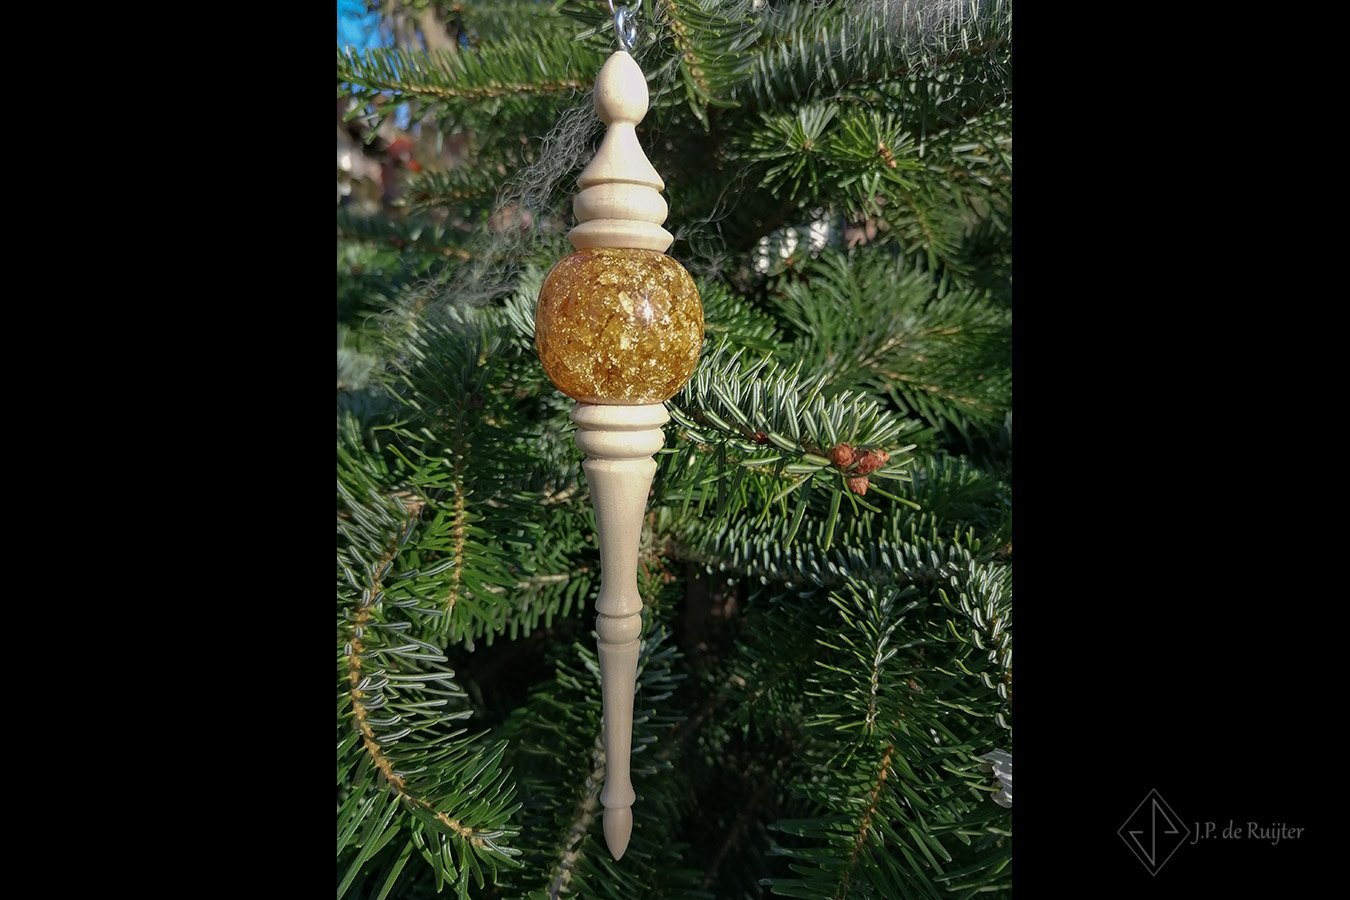 Sierlijk in ronde vormen gedraaid kerst ornamen van hout met goudglitters bal van epoxy. Deze hangt in de kerstboom.